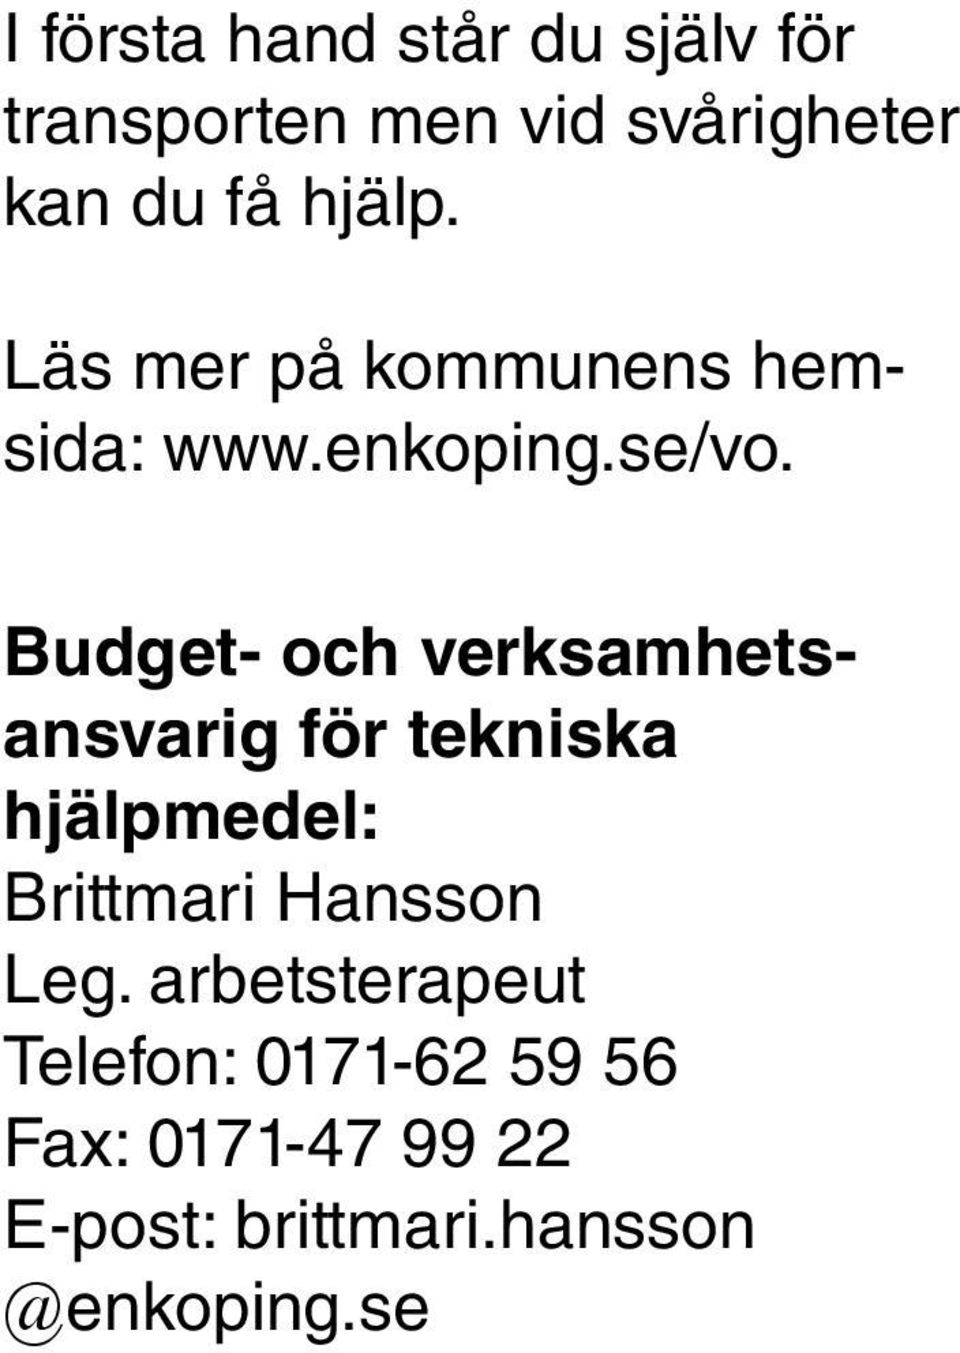 Budget- och verksamhetsansvarig för tekniska hjälpmedel: Brittmari Hansson